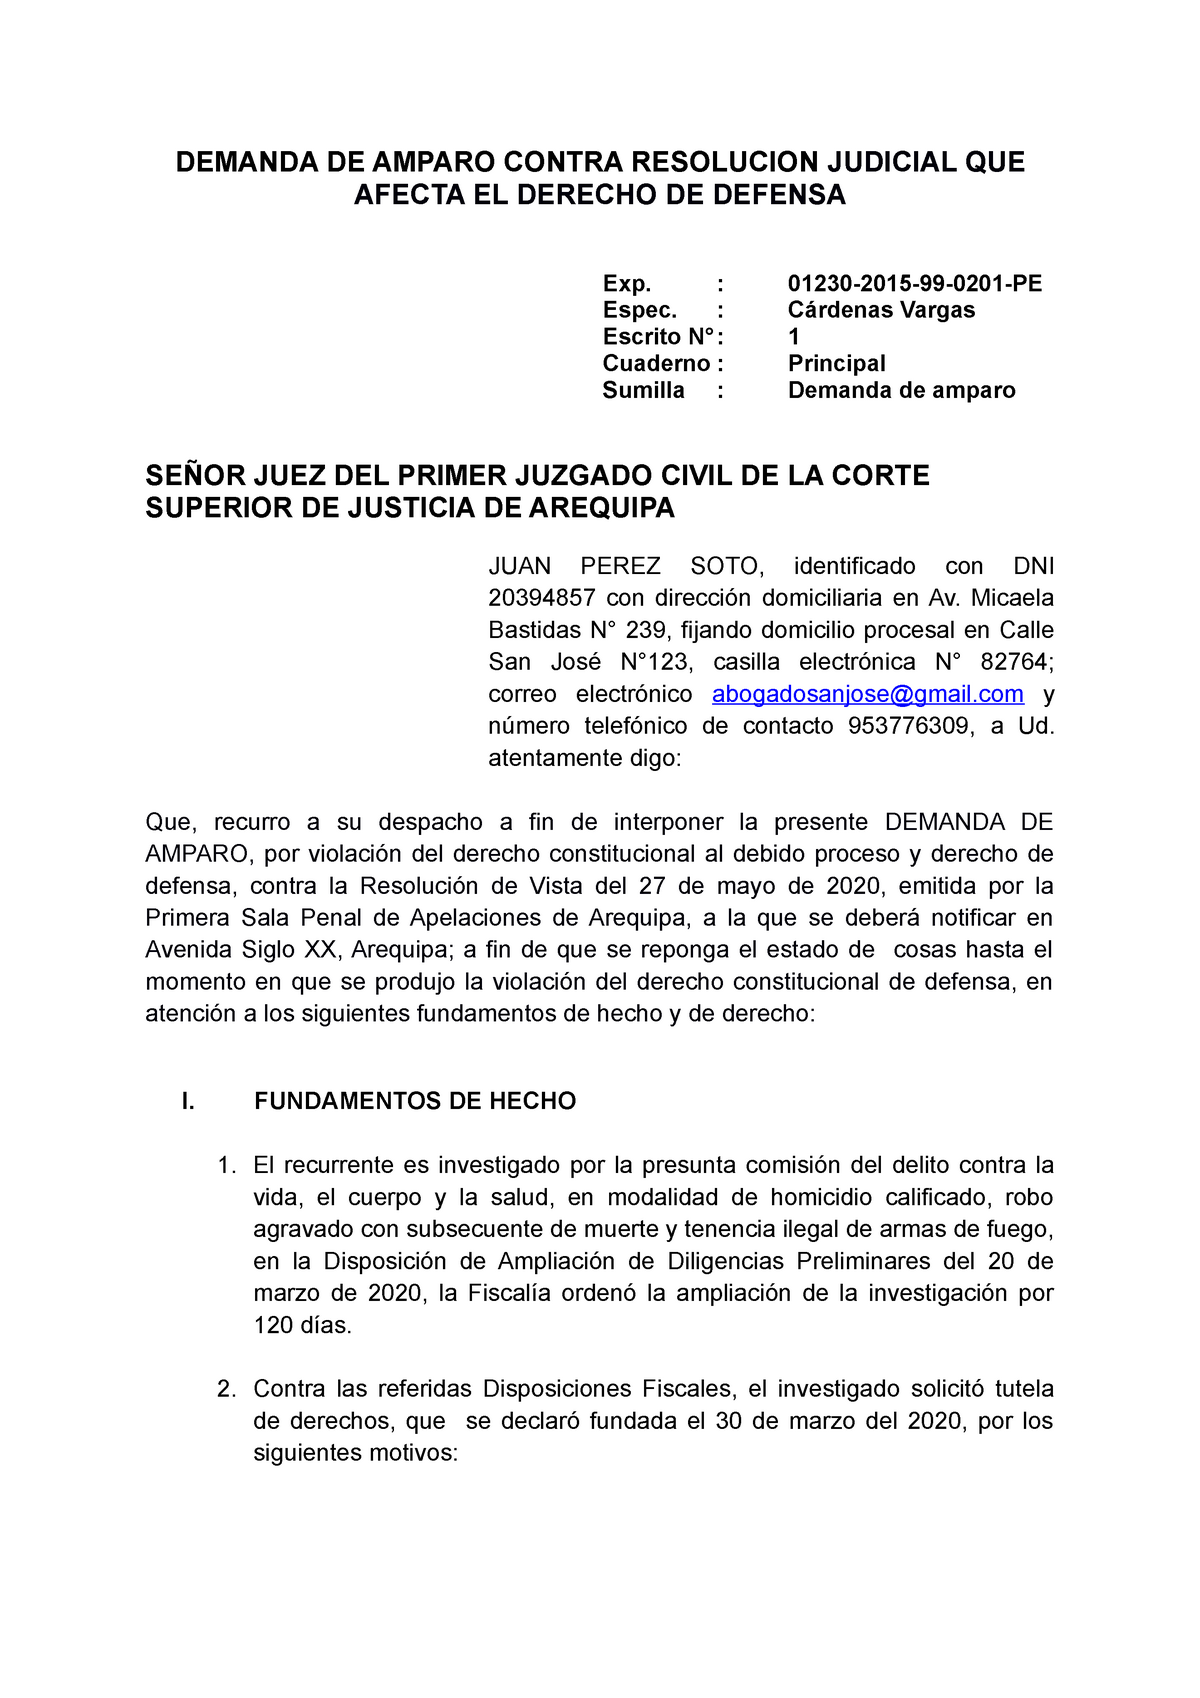 Demanda DE Amparo - DEMANDA DE AMPARO CONTRA RESOLUCION JUDICIAL QUE AFECTA  EL DERECHO DE DEFENSA - Studocu